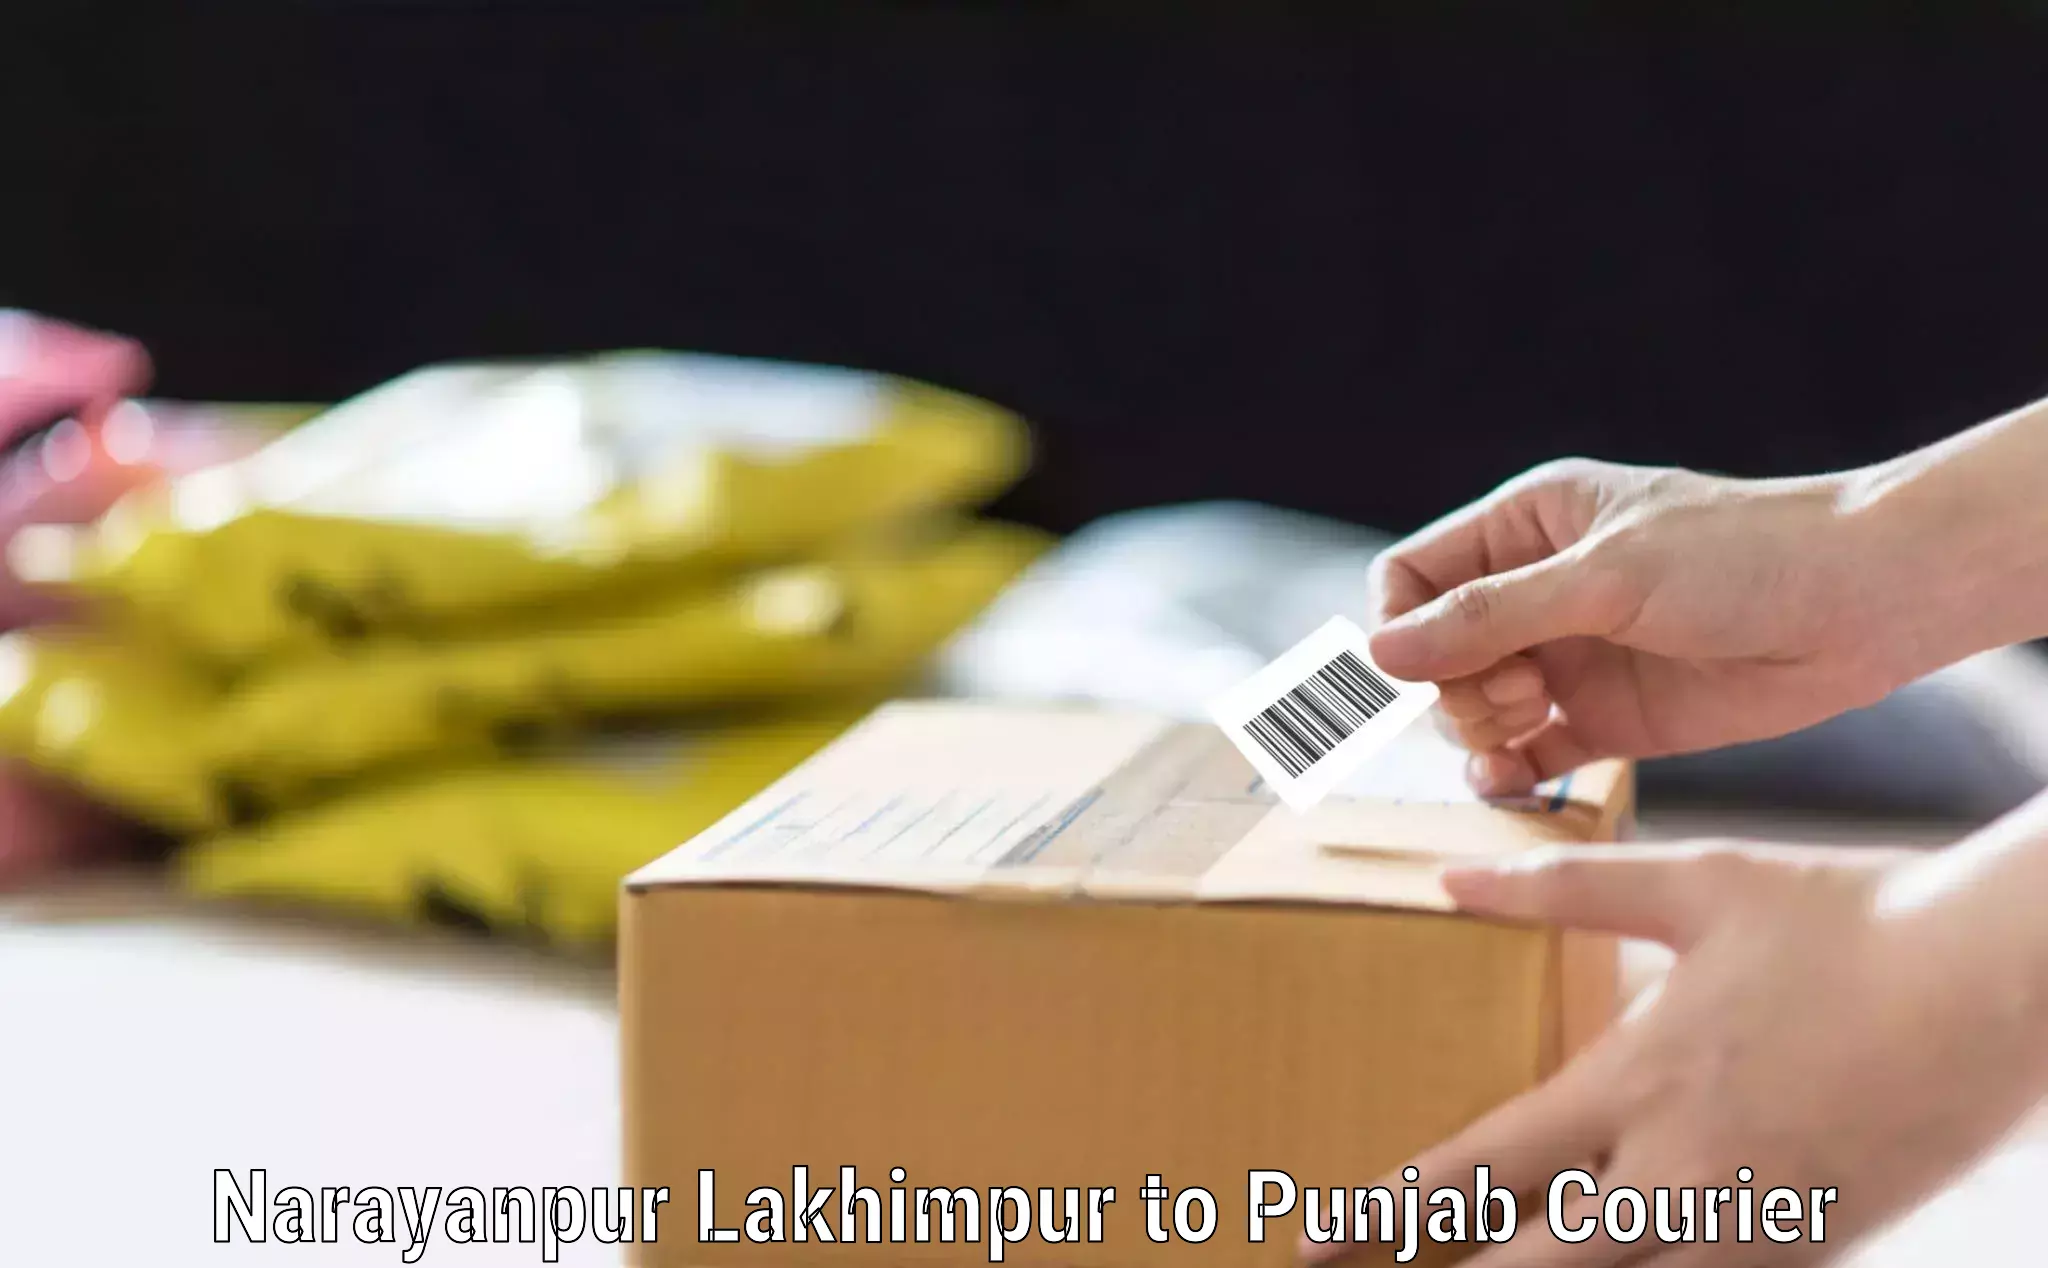 Baggage transport updates Narayanpur Lakhimpur to Jhunir